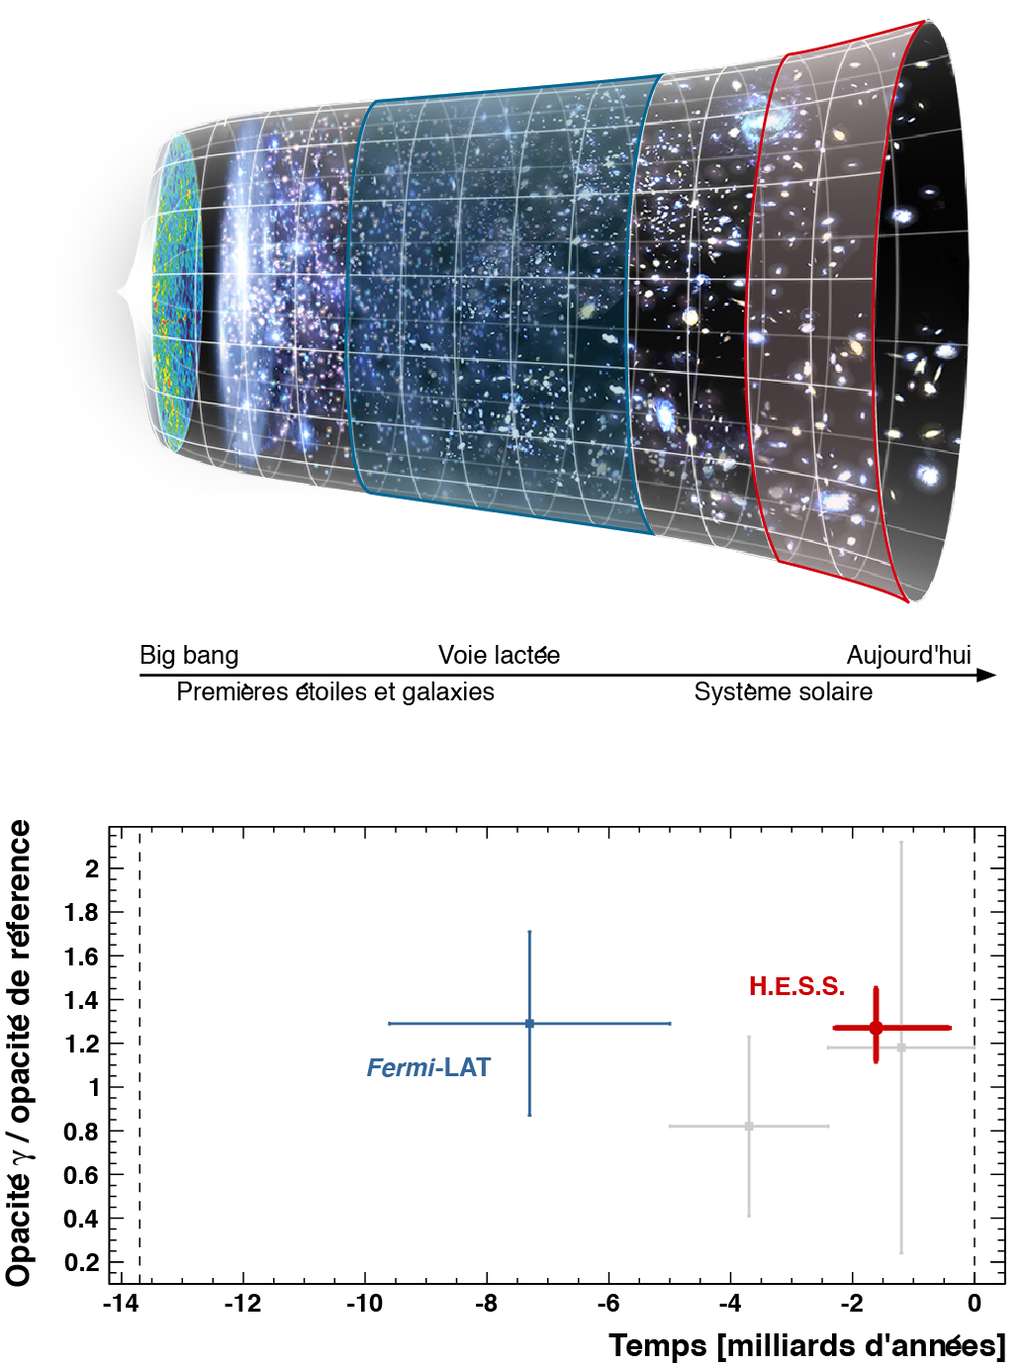 Histoire cosmique et mesure de l’opacité aux rayons gamma à différentes époques par Hess et Fermi-Lat. Au sein du consortium Hess, le groupe d’astronomie gamma du LLR a mesuré pour la première fois l’intensité de la lumière extragalactique diffuse en utilisant des rayons gamma au TeV. Cette lumière émise par l’ensemble des étoiles et des galaxies depuis la fin des âges sombres se comporte comme une sorte de brouillard cosmique, en absorbant les rayons gamma émis par des sources lointaines. Des phares perçant ce brouillard, les blazars, ont été utilisés pour mesurer l’absorption et en déduire avec une précision de l’ordre de 20 % l’intensité du fond diffus cosmologique. Cette première mesure fine dans l’univers proche (zone rouge dans la figure du haut) est complémentaire de la mesure réalisée par Fermi-Lat. L’axe vertical du graphique montre l’opacité normalisée à un modèle de référence (Franceschini <em>et al.</em>, 2008) et l’axe horizontal indique les distances, en années-lumière, auxquelles sont situés les blazars utilisés pour les mesures. Le point bleu à gauche indique la gamme dans laquelle la mesure de Fermi est statistiquement significative, et le point rouge à droite montre la mesure réalisée par Hess dans l’univers proche. © <em>LLR-Hess Collaboration</em>